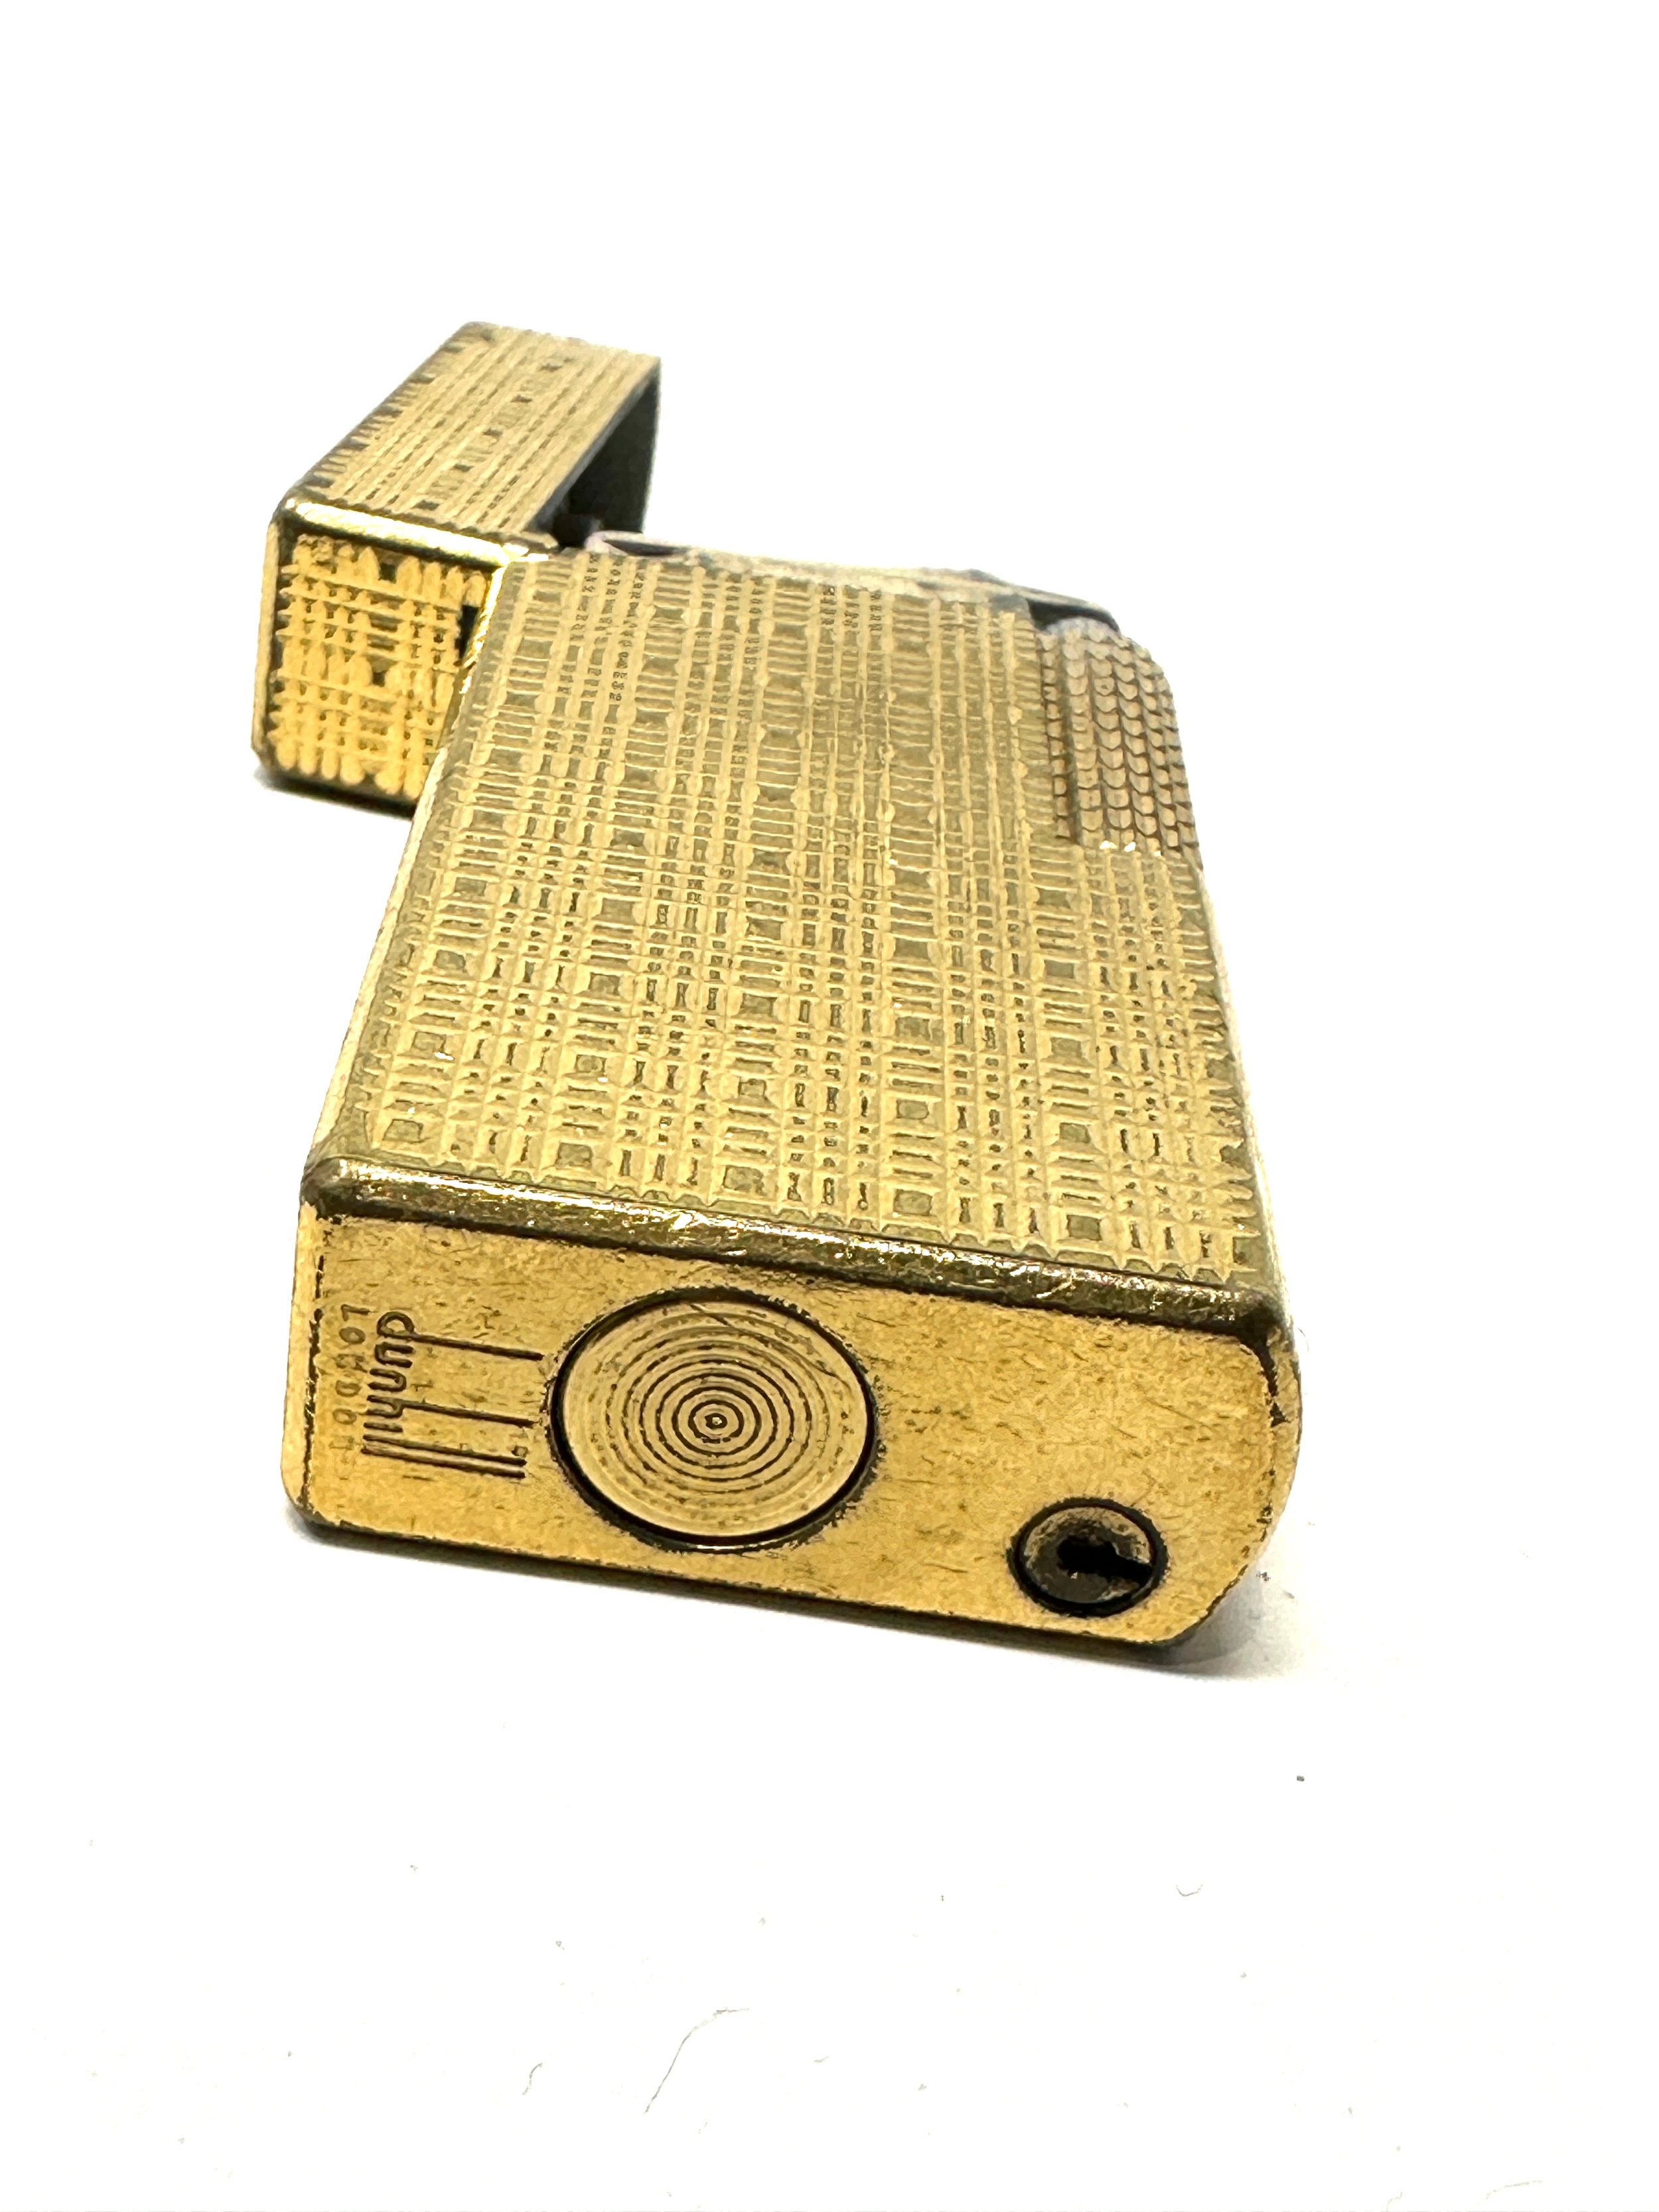 Vintage dunhill cigarette lighter - Image 3 of 3